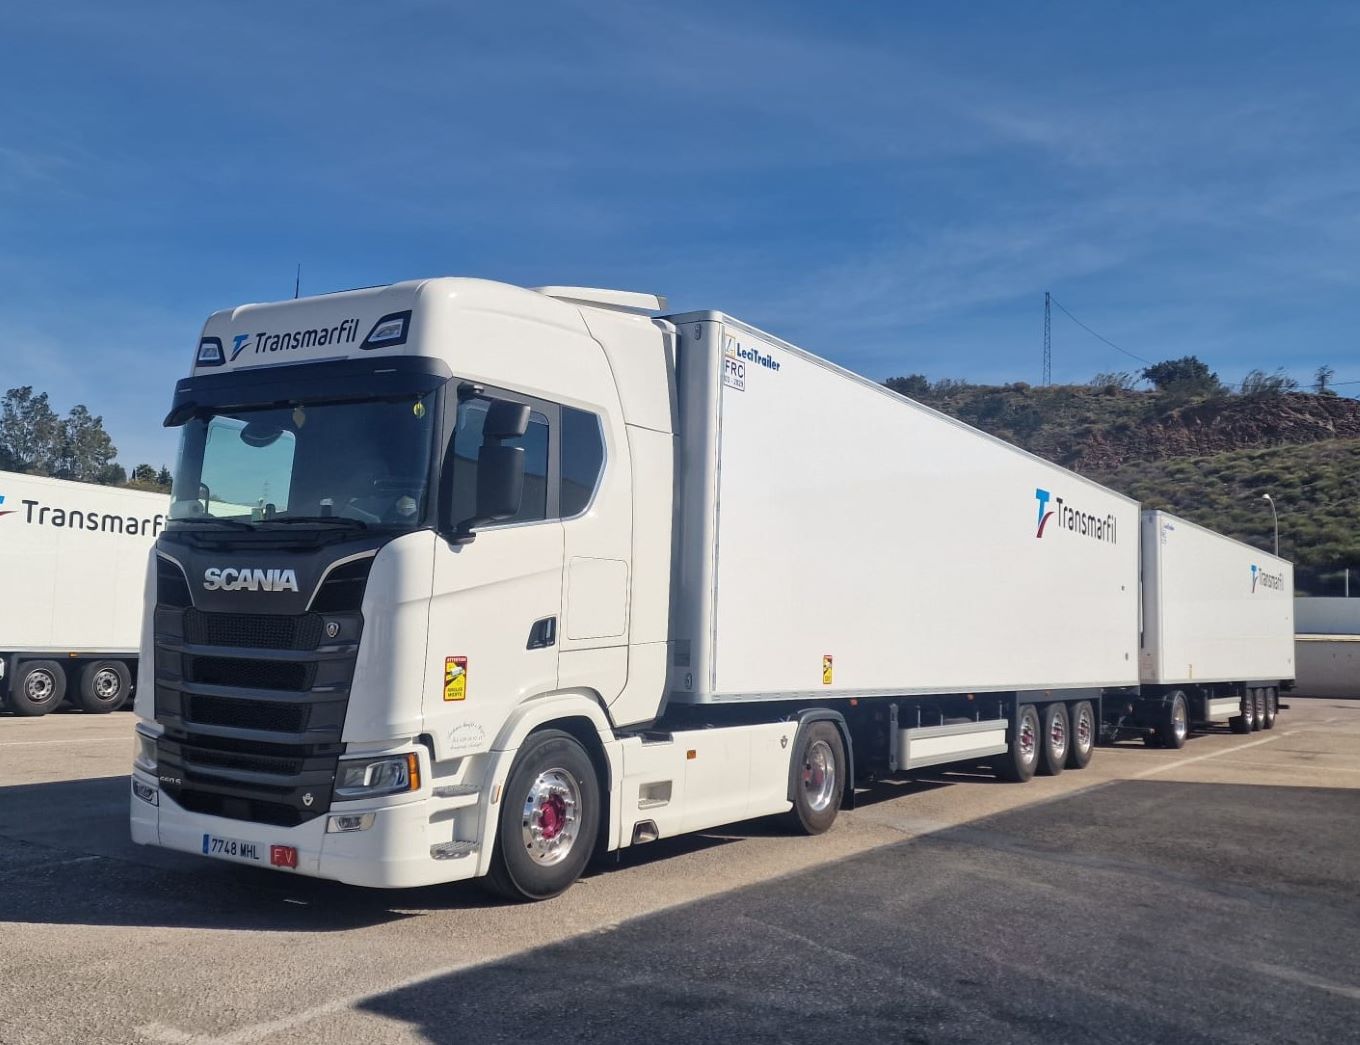 TransMarfil confía en el V8 de Scania